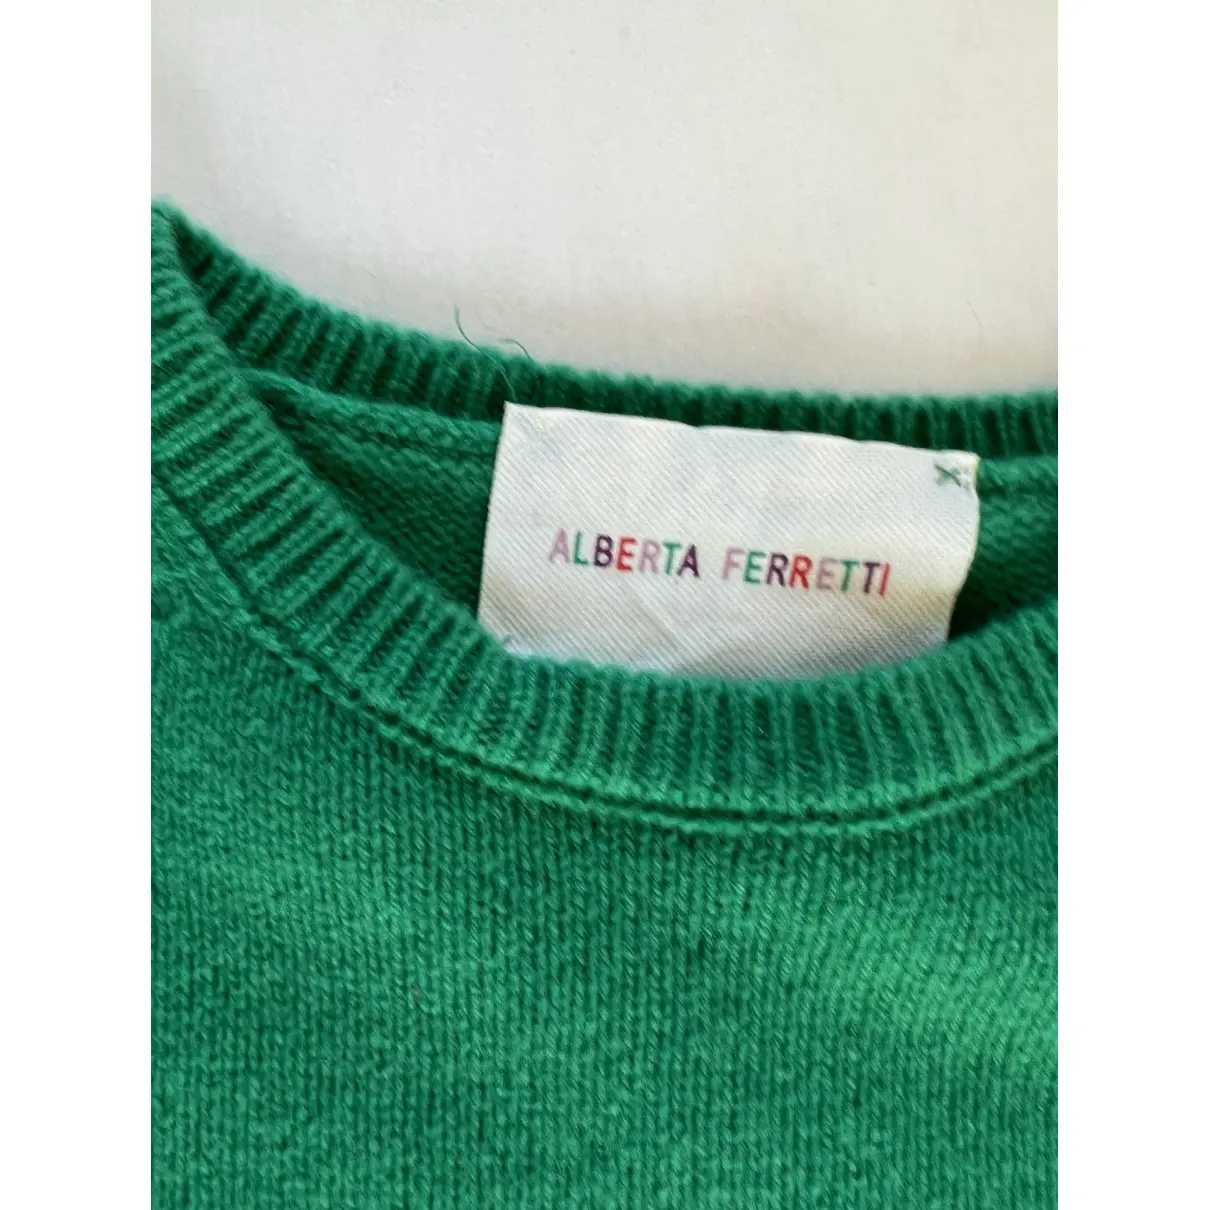 Buy Alberta Ferretti Cashmere knitwear online